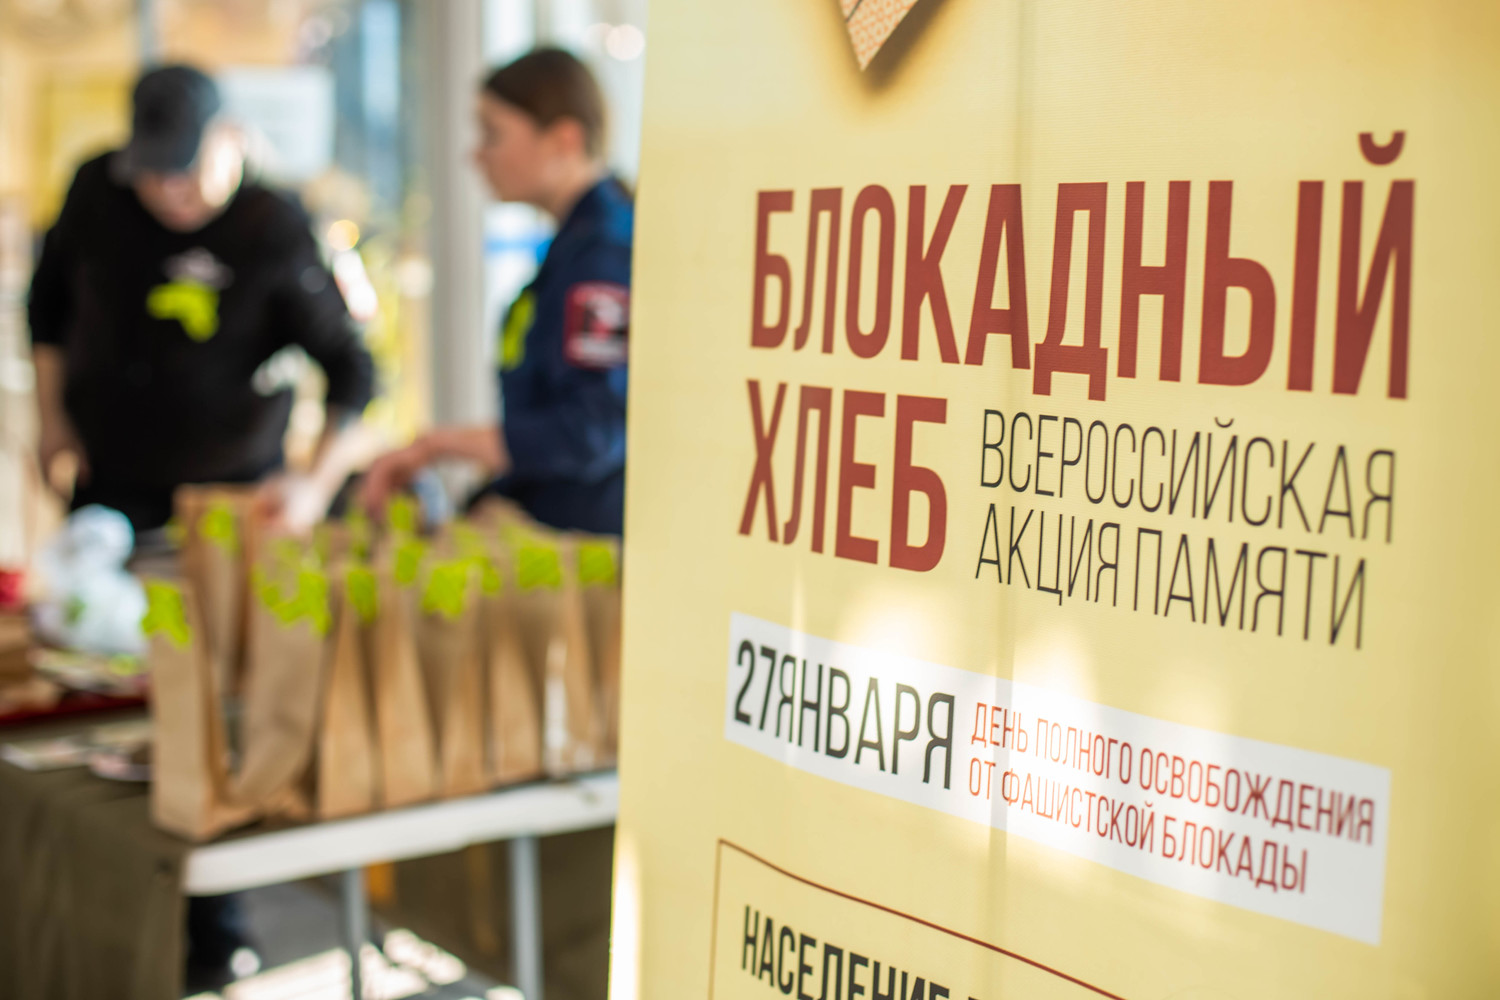 Тысячи порций «блокадного хлеба» раздали в Хабаровске: фото